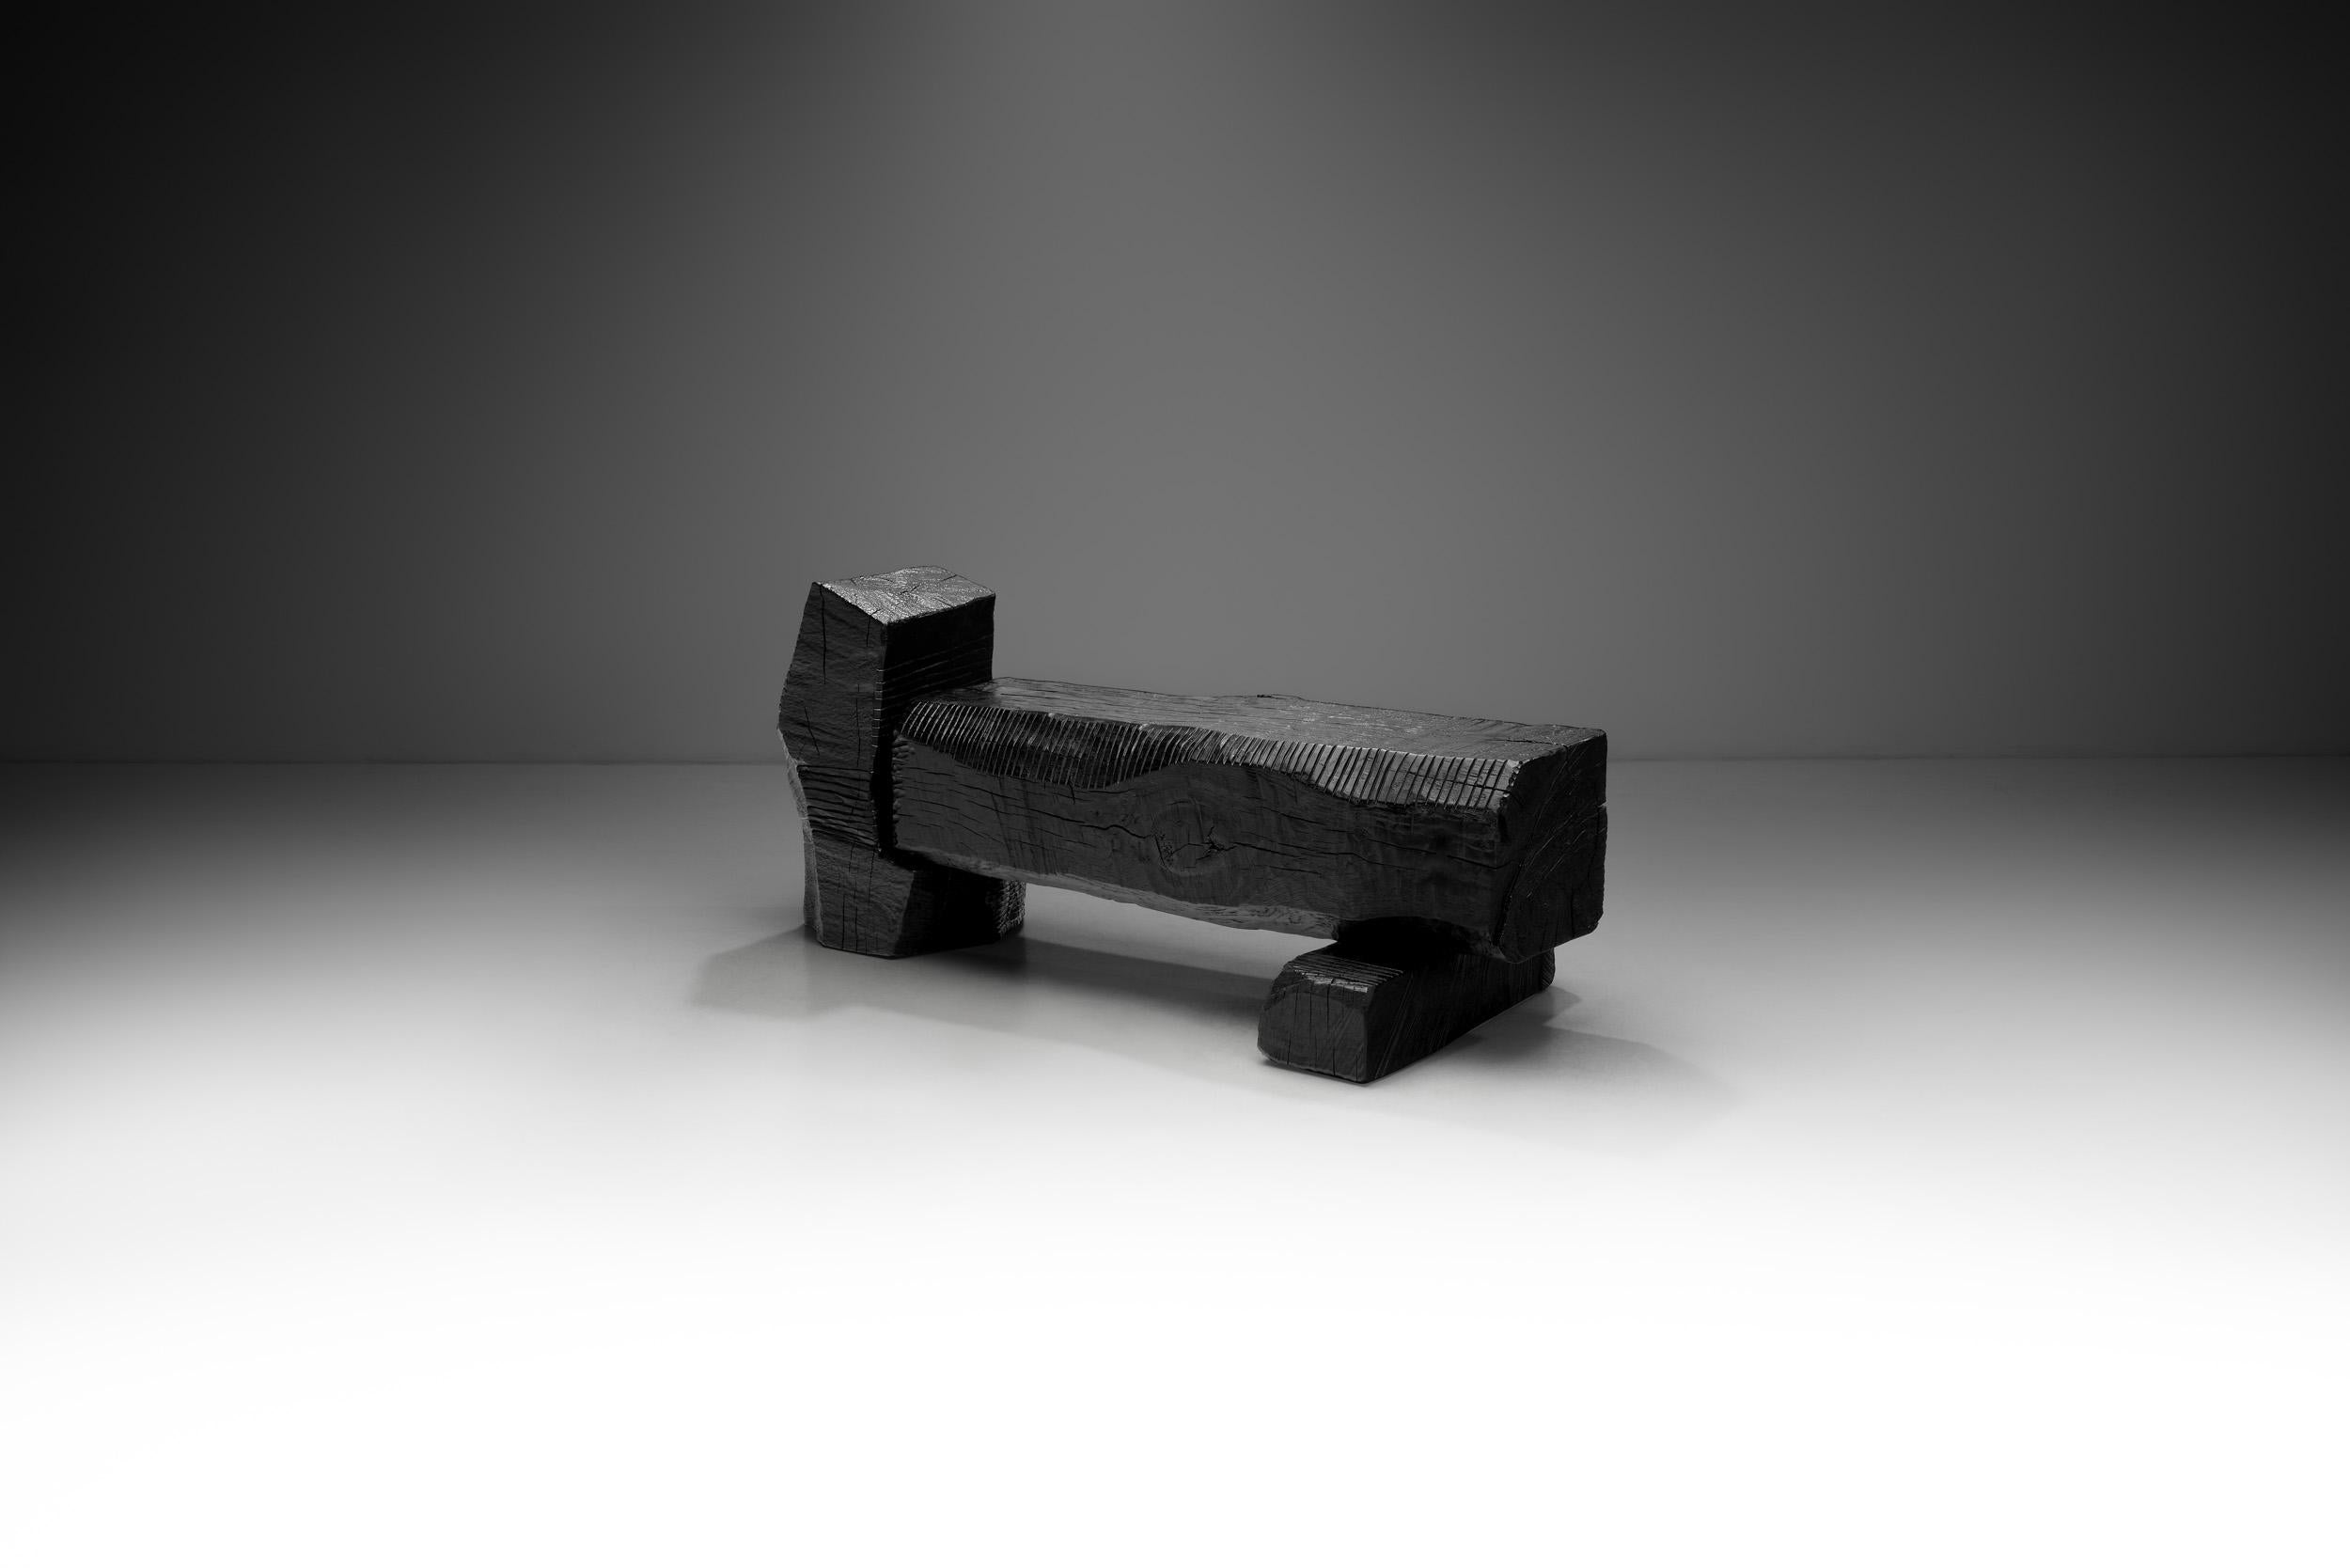 Le banc en chêne noir de Robin Berrewaerts est sculpté à la main et fabriqué en chêne ébonisé avec une finition à l'huile. Chaque pièce est une expression unique, attaquant le bois avec les outils appropriés et trouvant par une lente manipulation